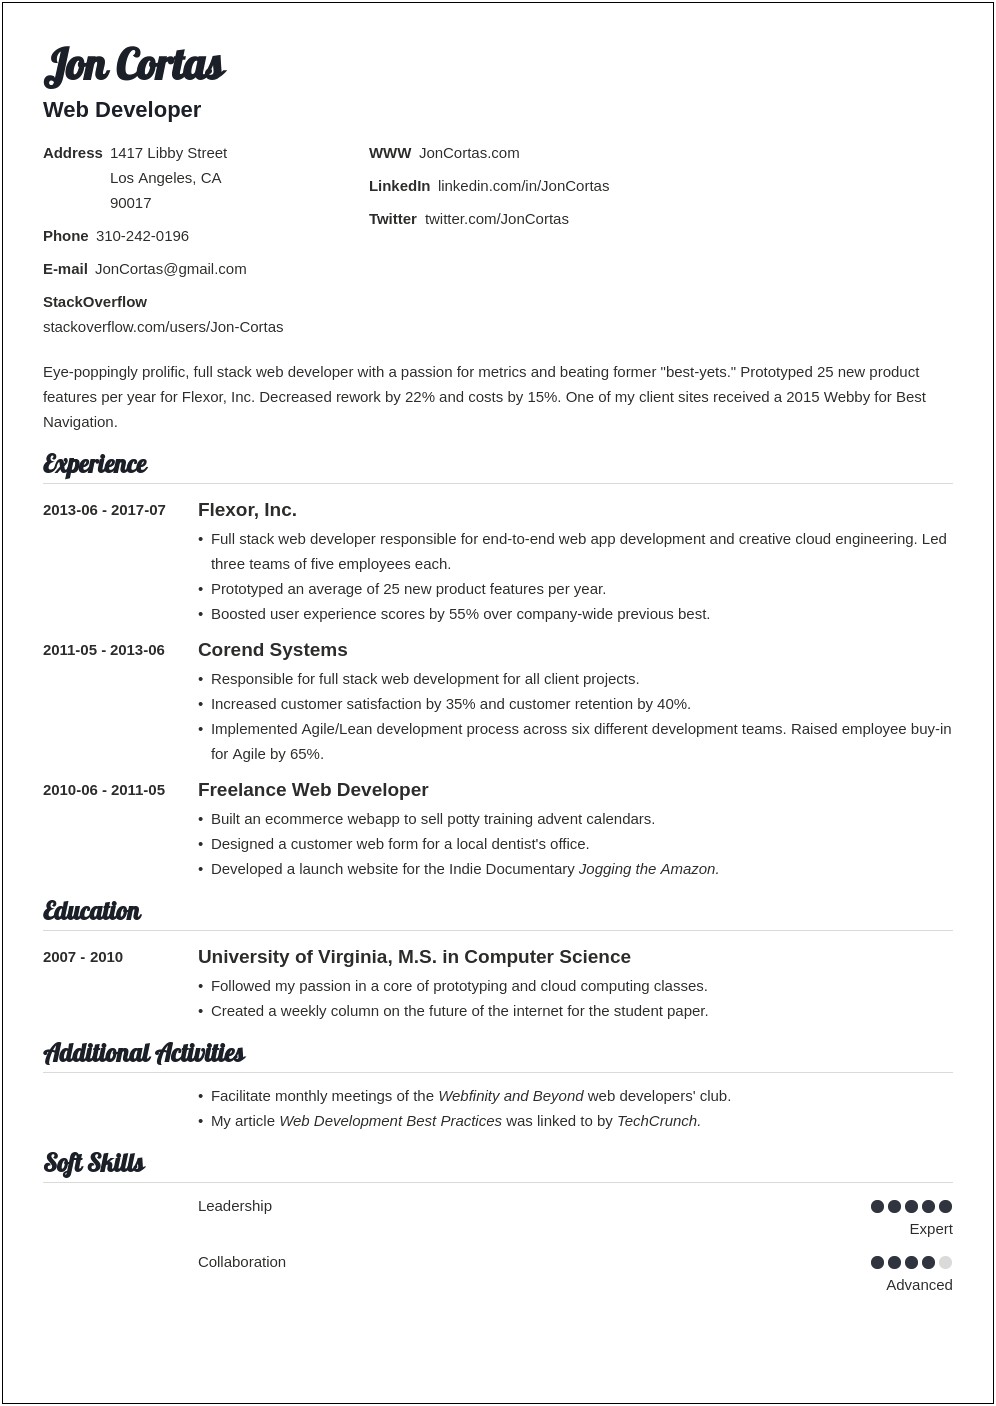 Web Development Manager Resume Profile Summary